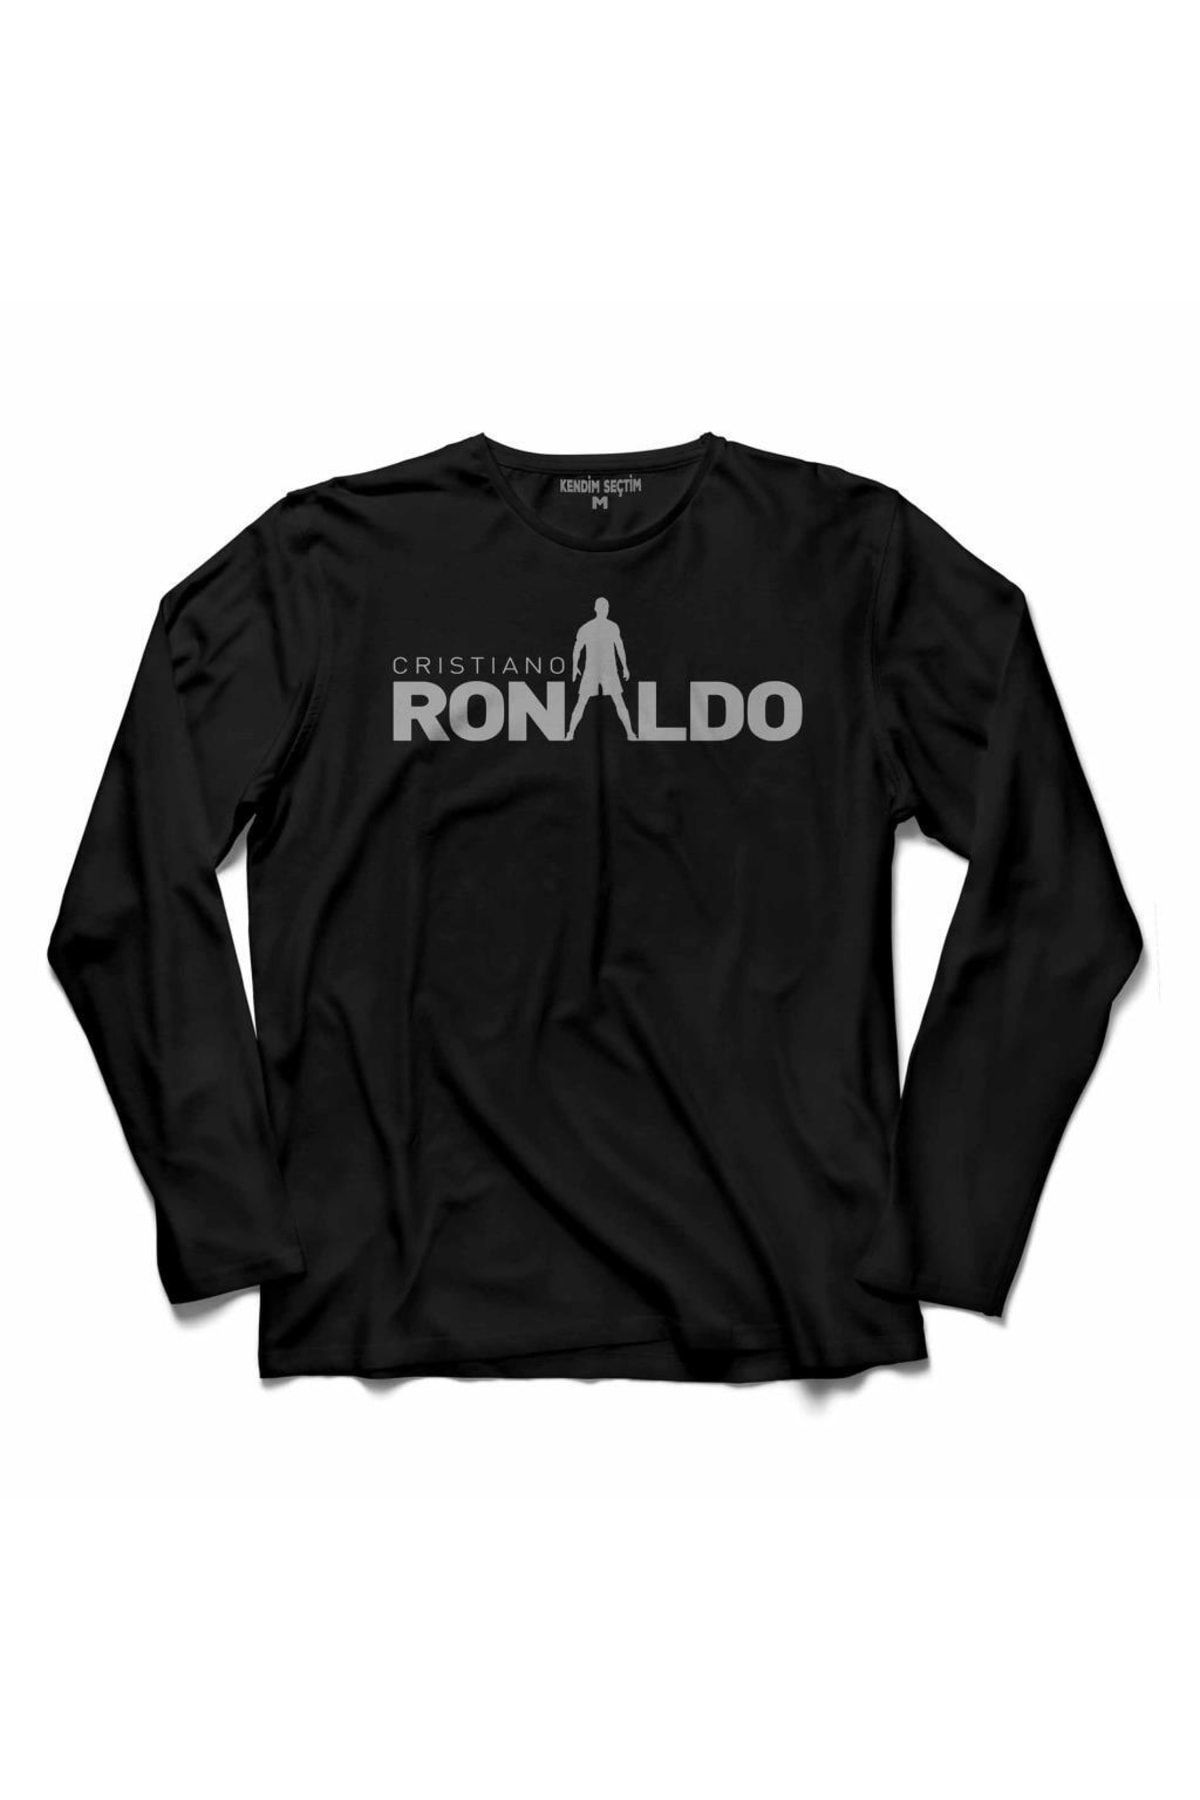 Kendim Seçtim Cristiano Ronaldo Cr7 Juventus Forma Altın Top 2 Uzun Kollu Tişört